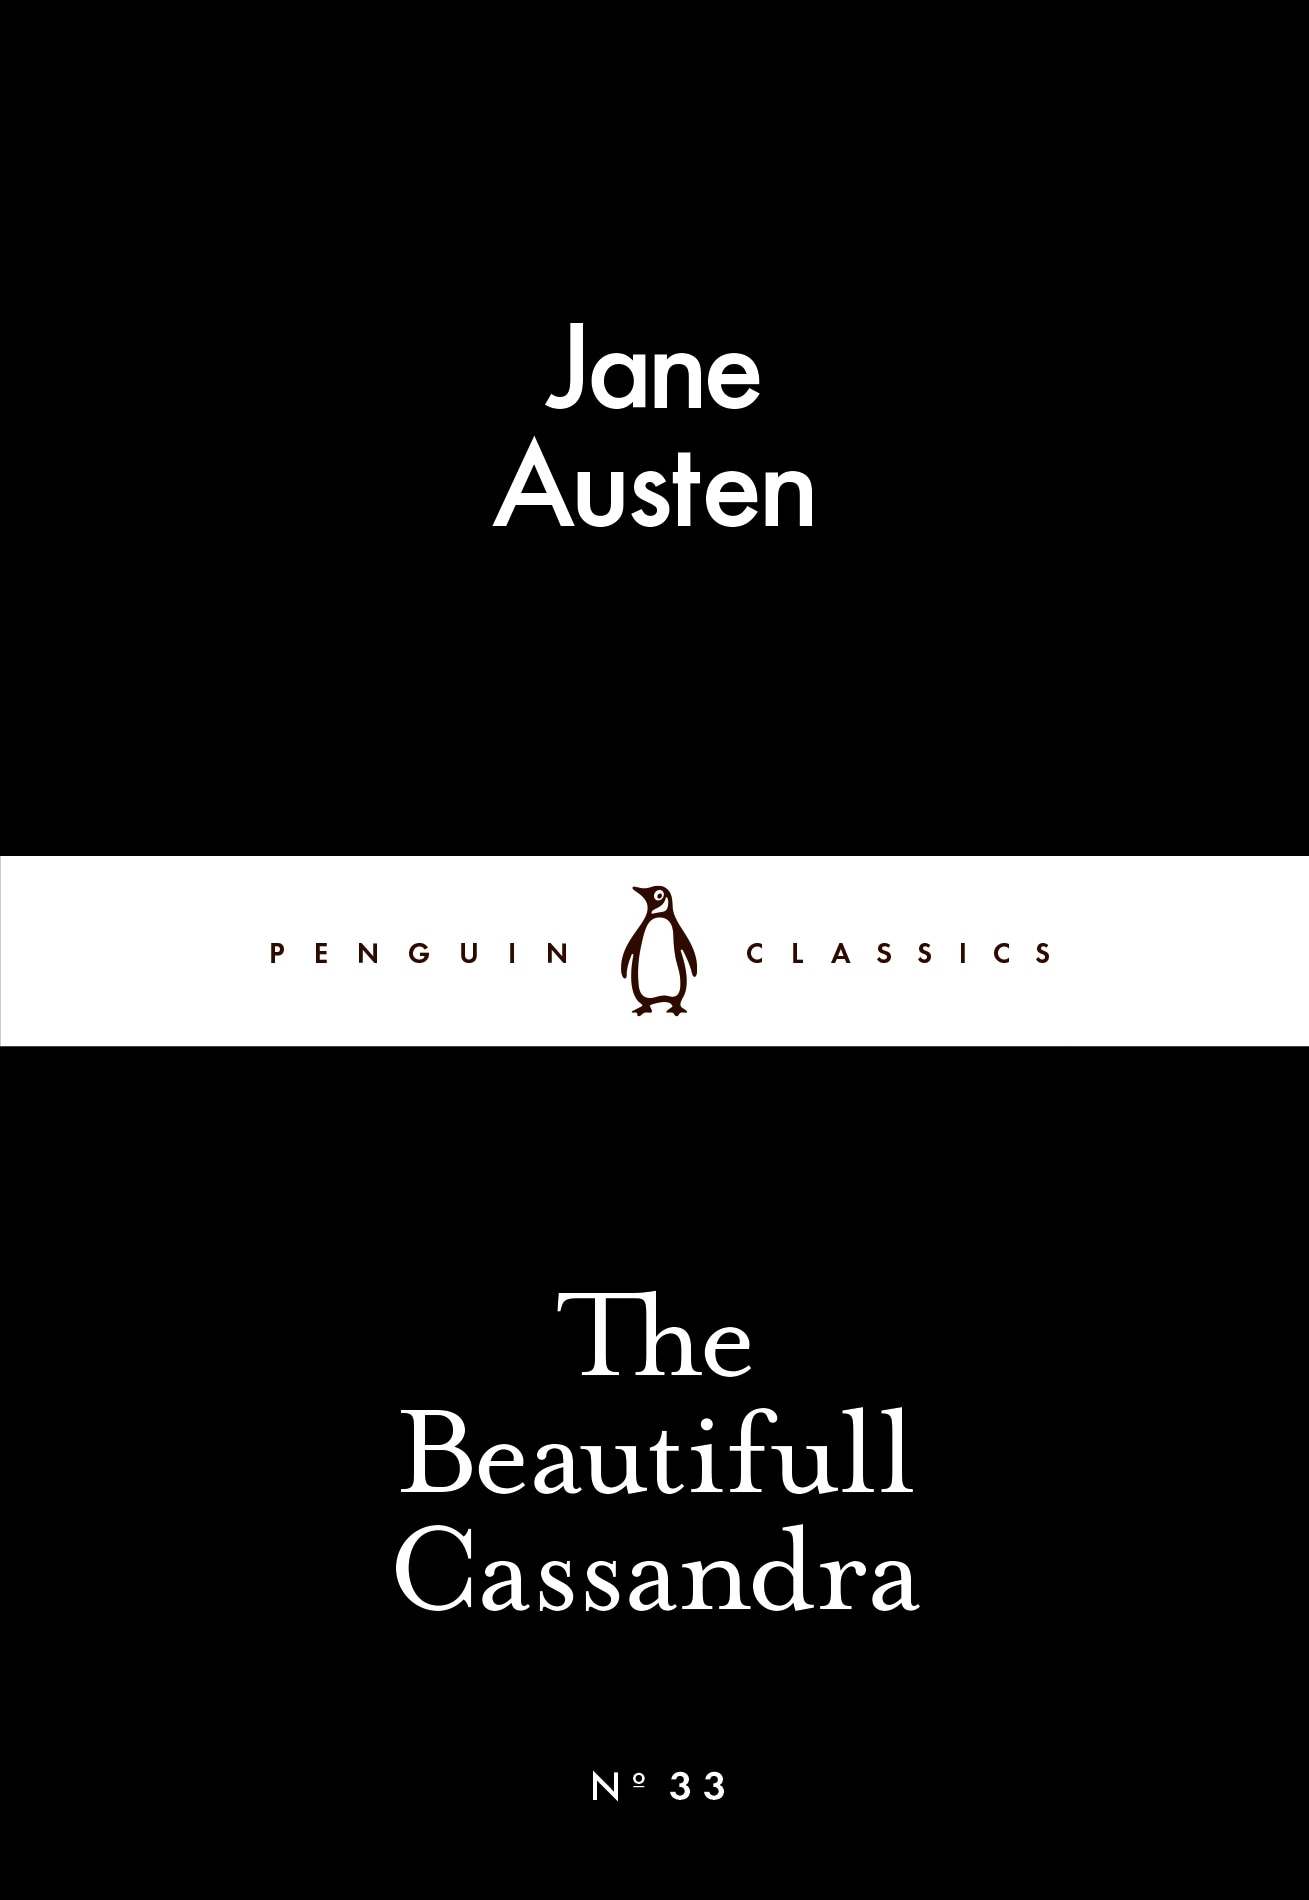 Book “The Beautifull Cassandra” by Jane Austen — February 26, 2015